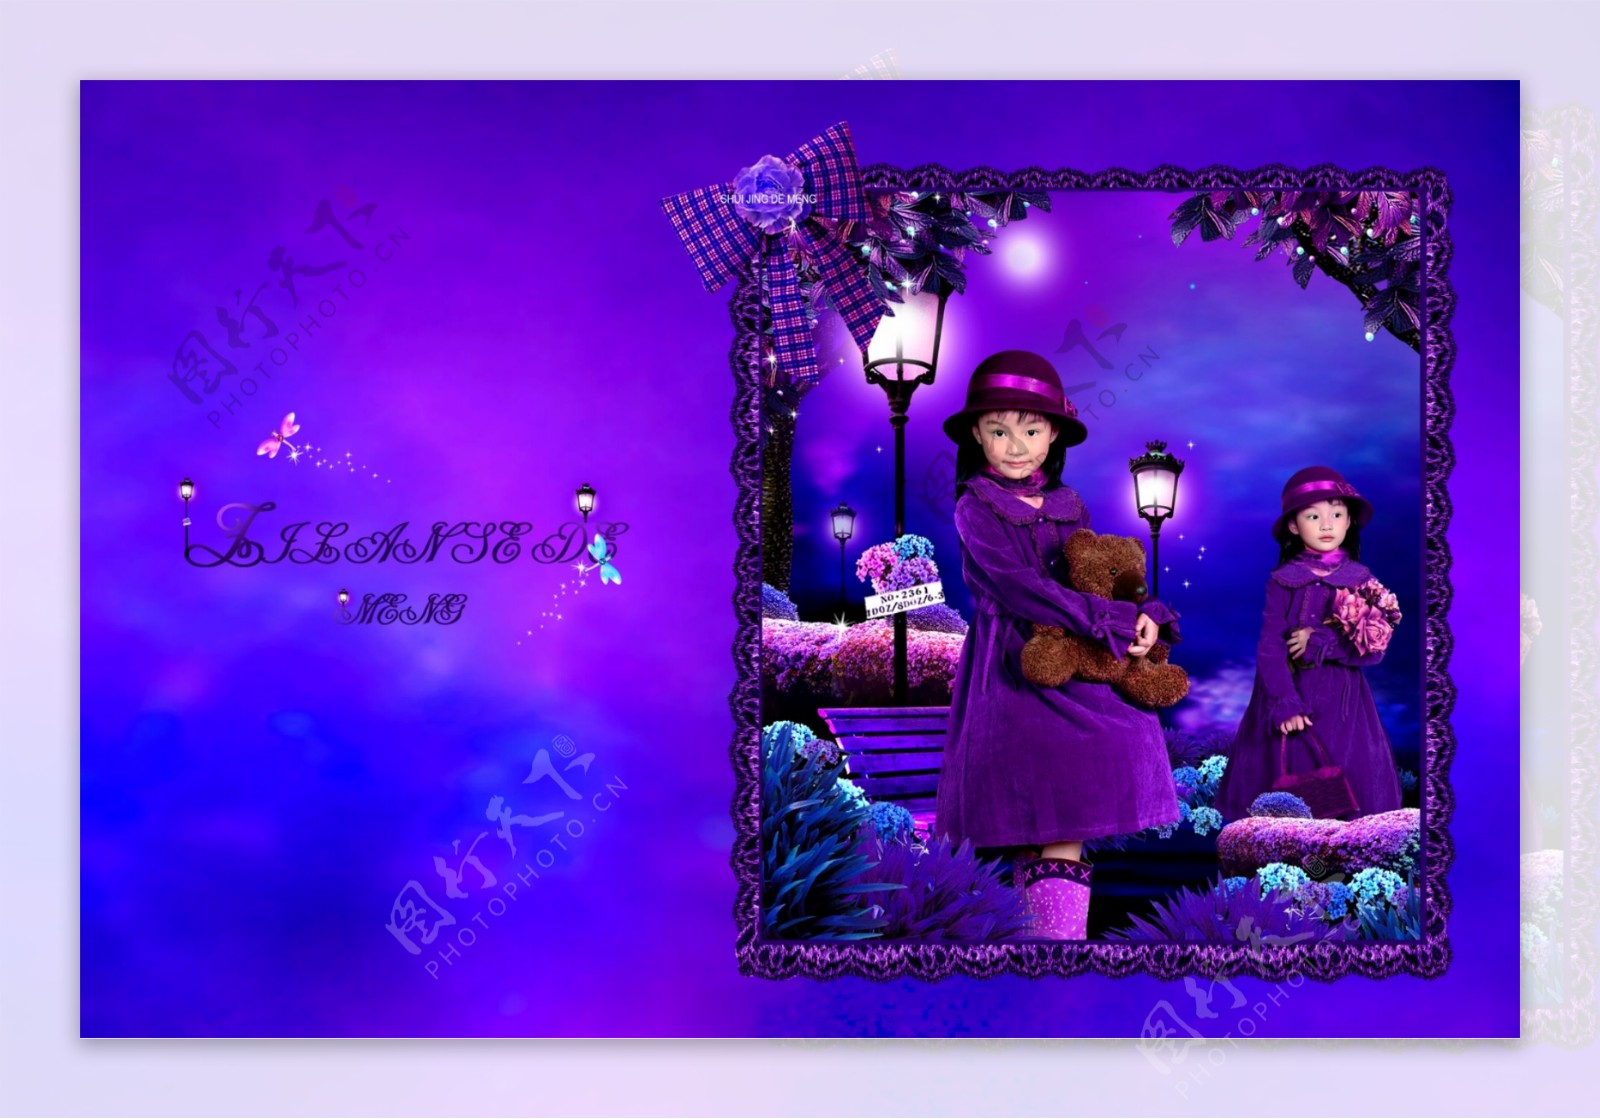 精灵天使紫色梦幻儿童模板影楼魔法书DVD47